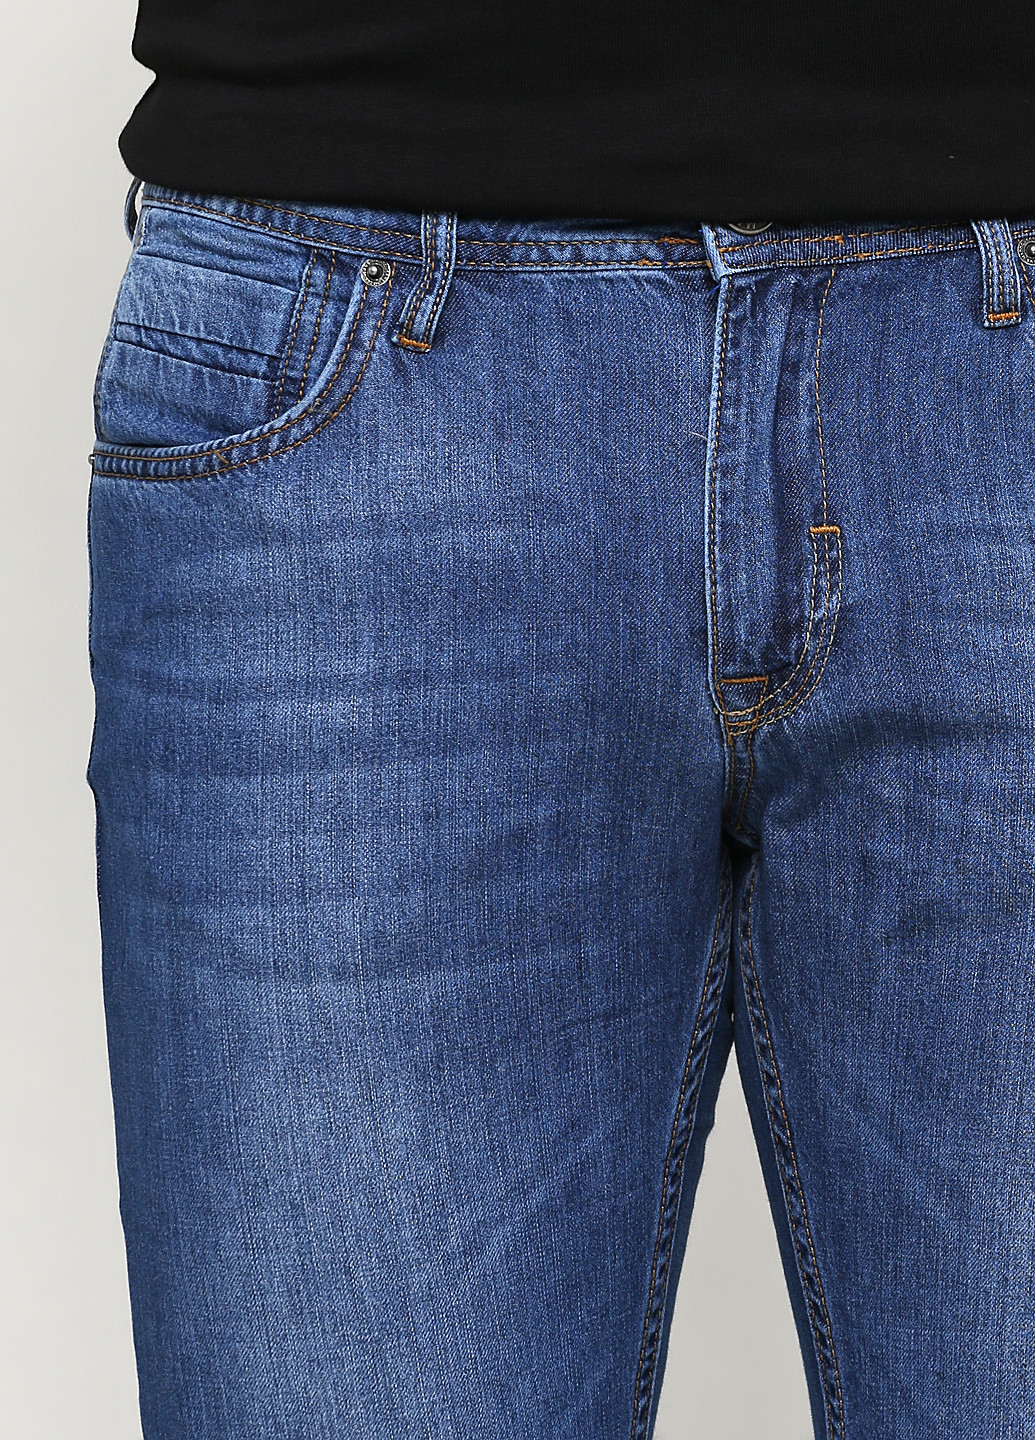 Синие демисезонные прямые джинсы Madoc Jeans